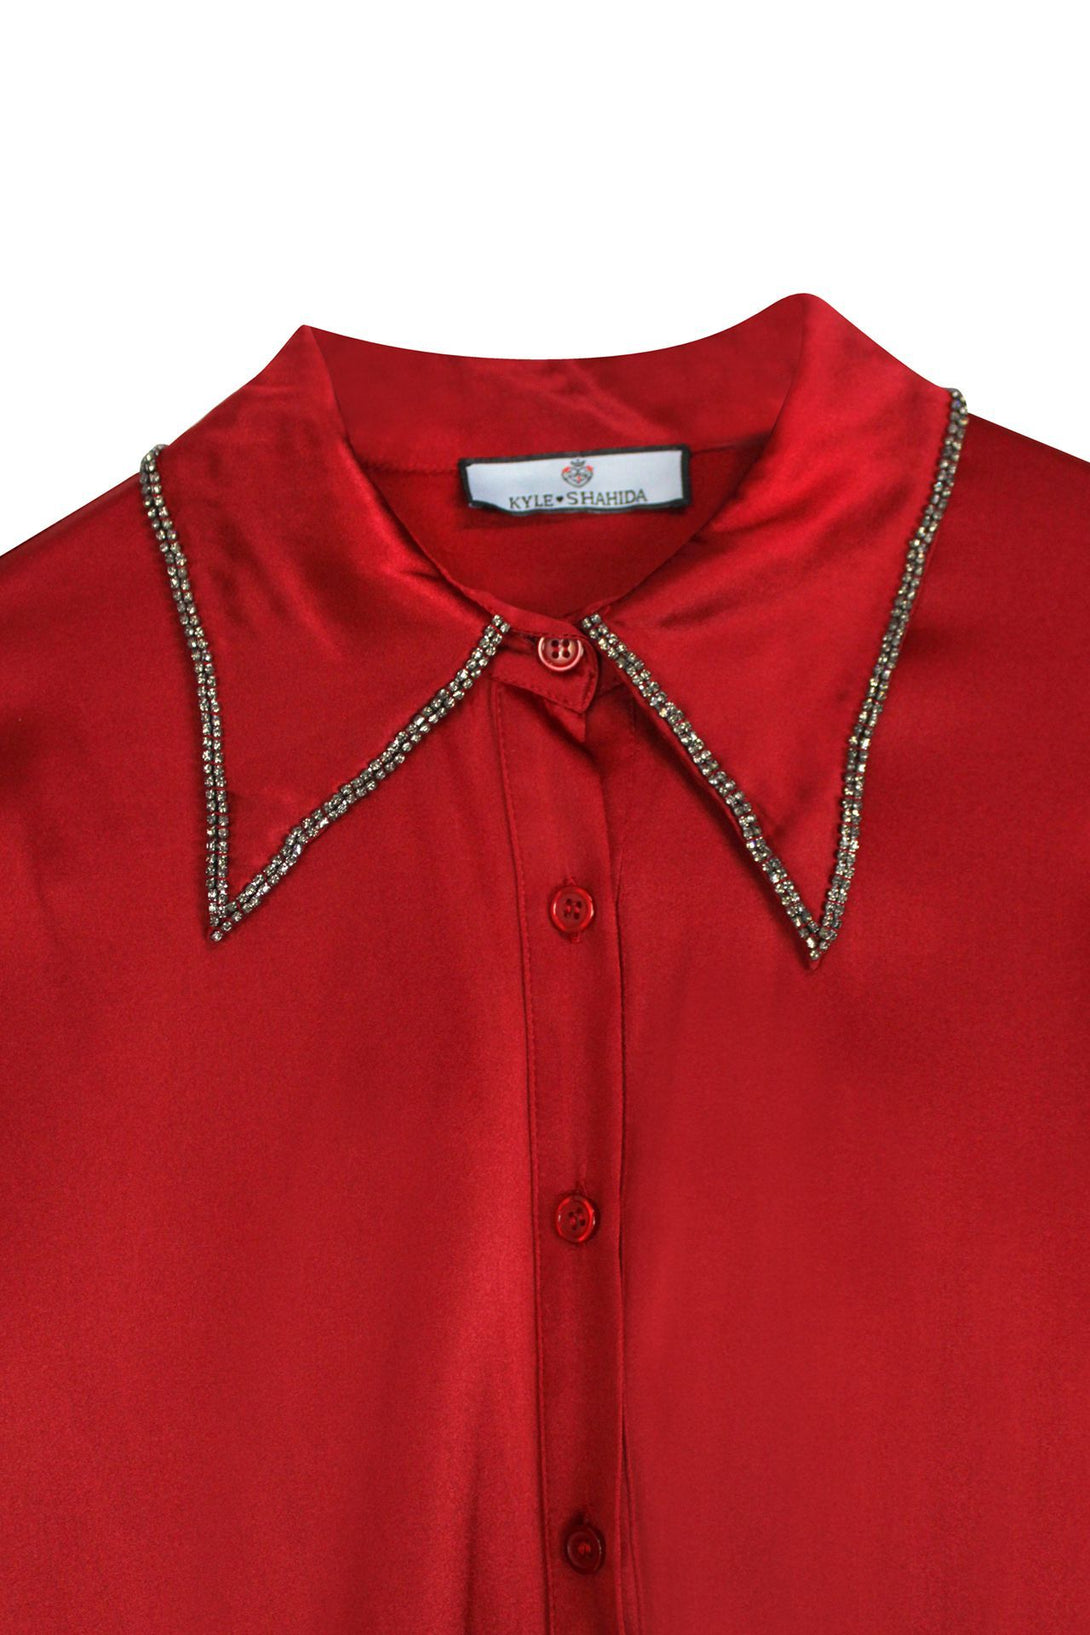 Women-Designer-Buttondown-Shirt-In-Red-By-Kyle-Richards